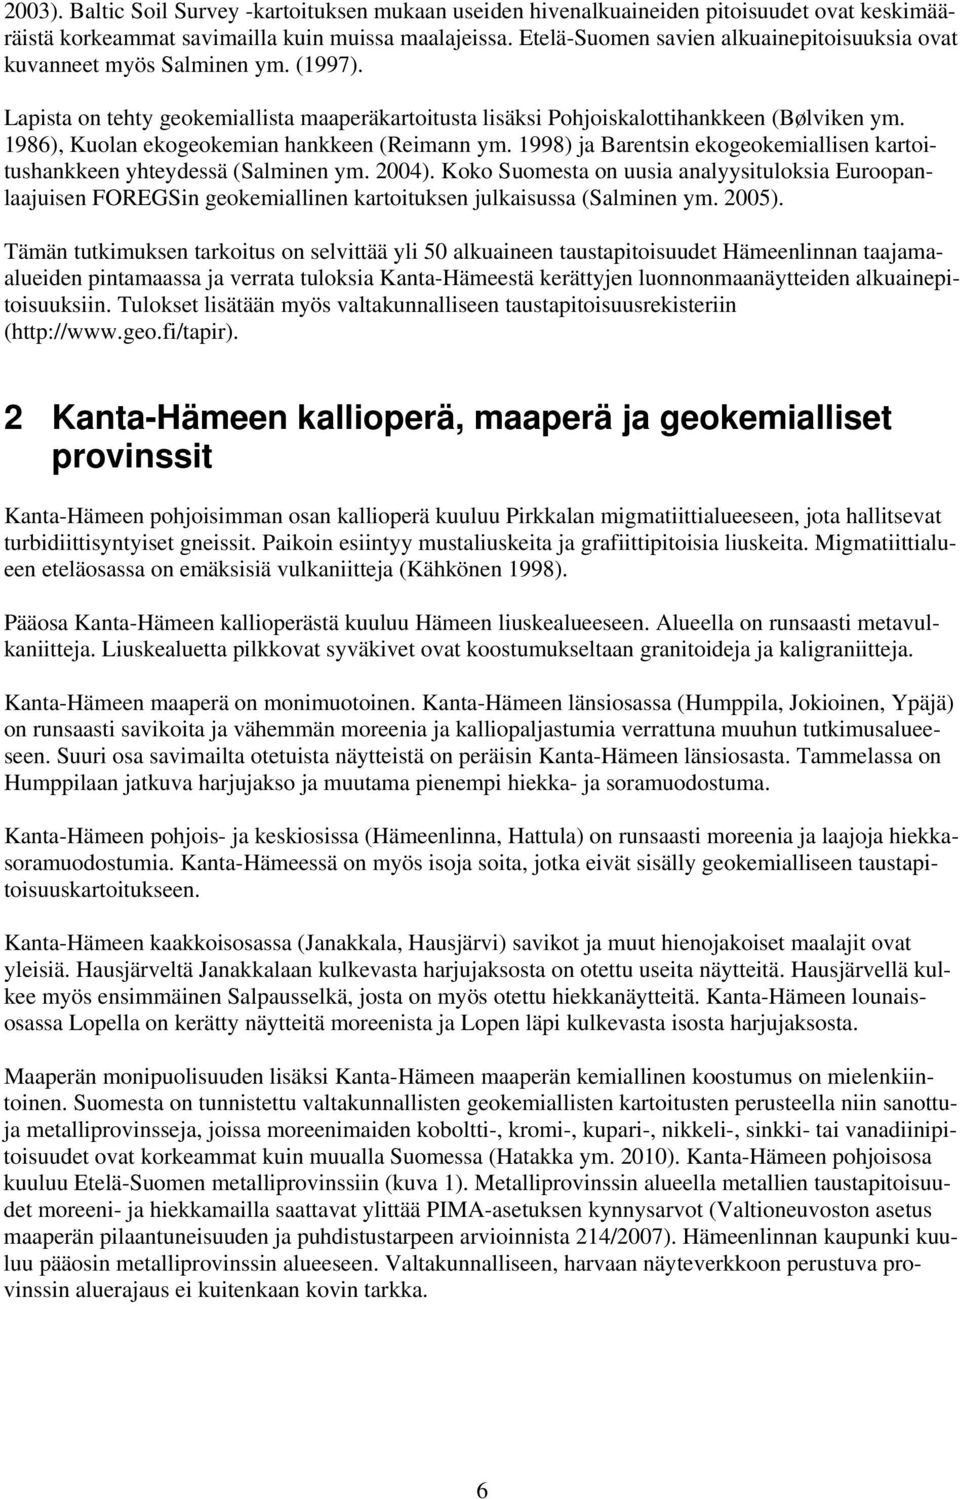 1986), Kuolan ekogeokemian hankkeen (Reimann ym. 1998) ja Barentsin ekogeokemiallisen kartoitushankkeen yhteydessä (Salminen ym. 2004).